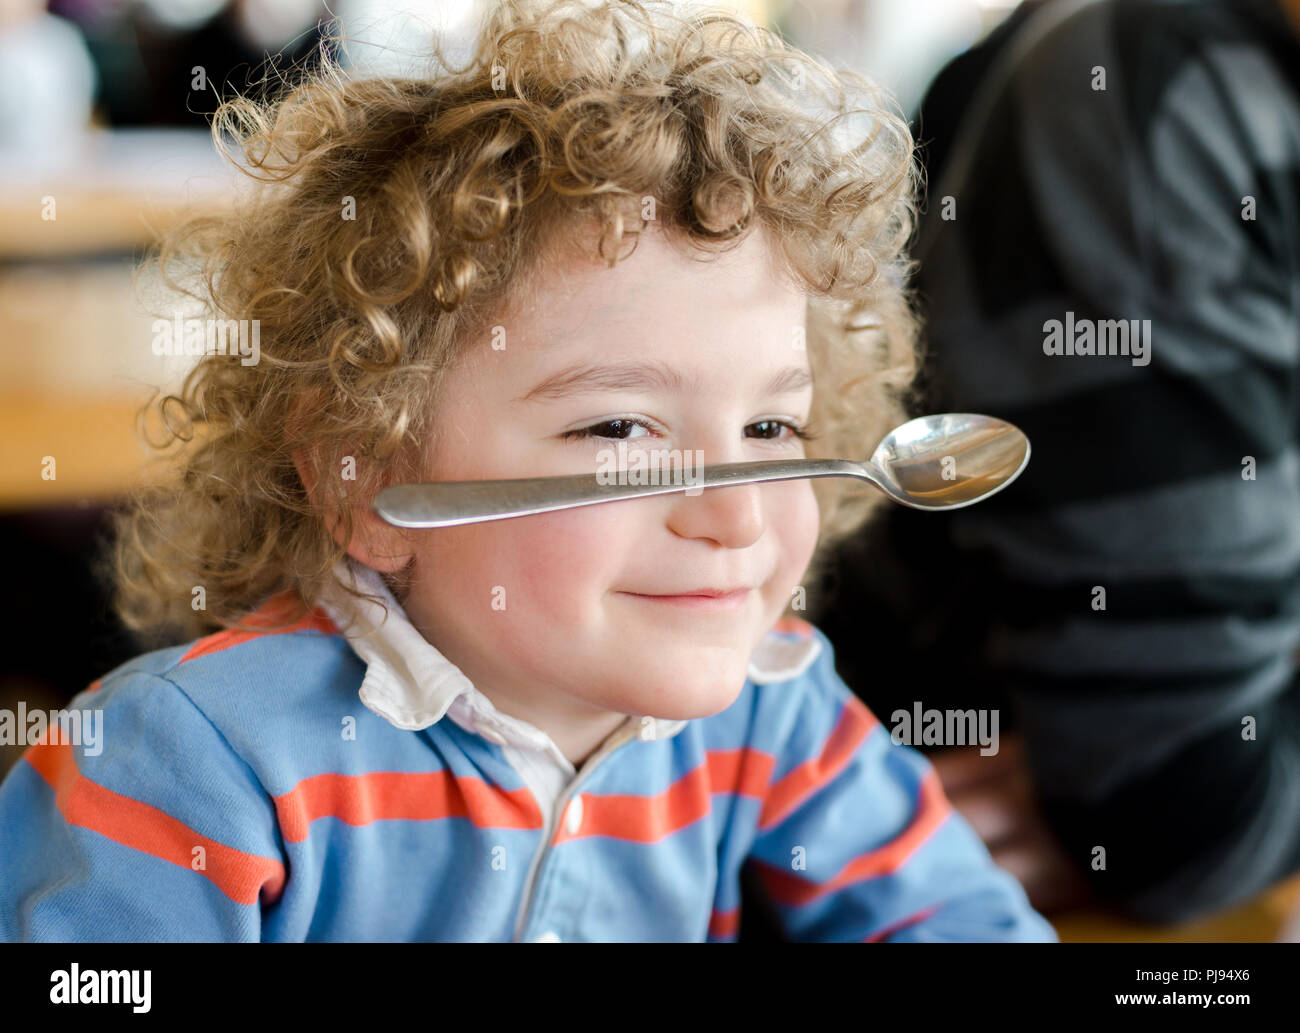 Junge Junge lächelt als er gleicht einem Löffel auf der Nase als Partei trick Stockfoto